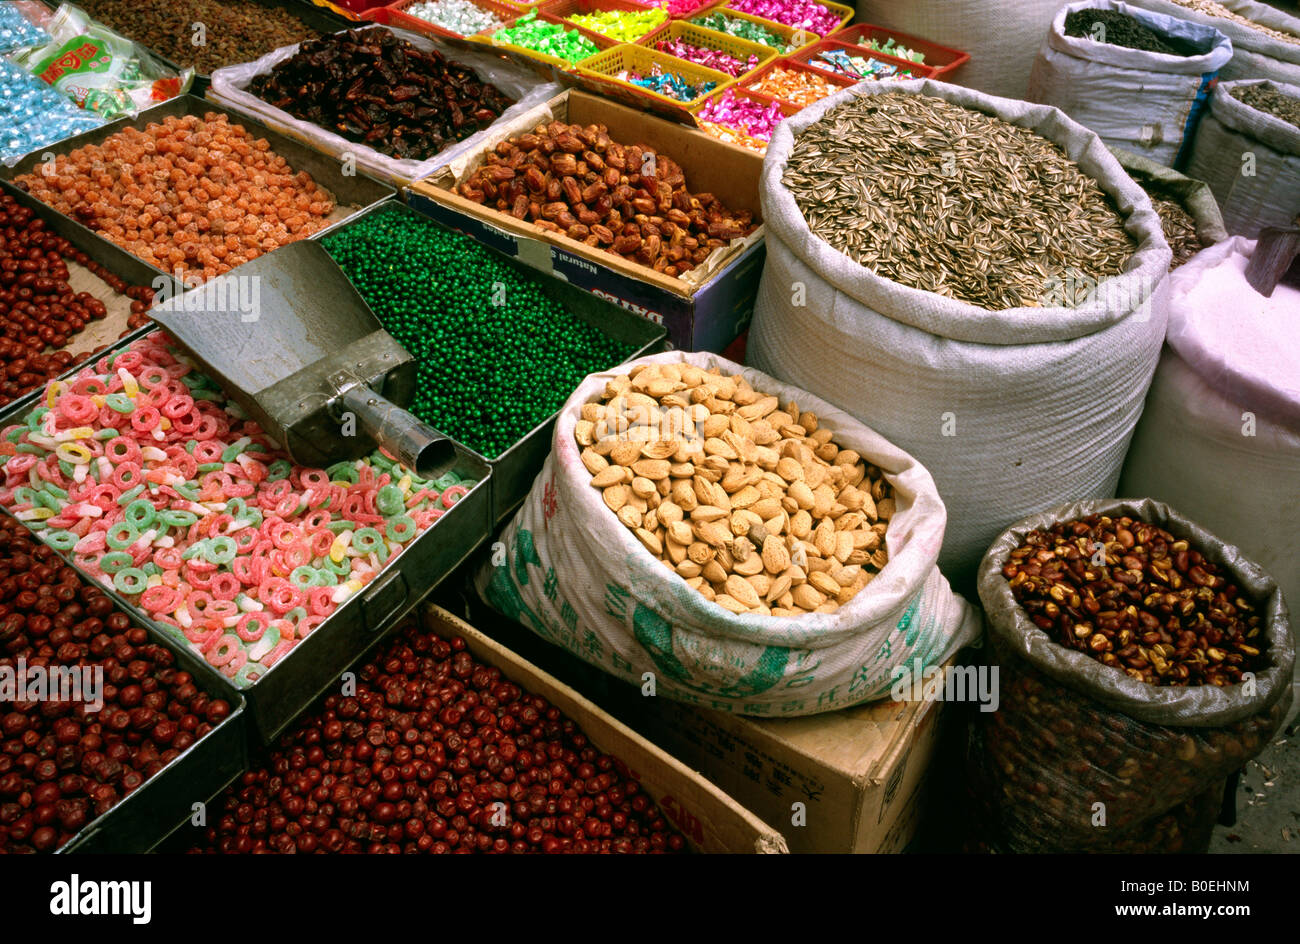 2 luglio 2006 - frutta secca e dolci per la vendita a Kashgar il mercato della domenica nella provincia cinese dello Xinjiang. Foto Stock